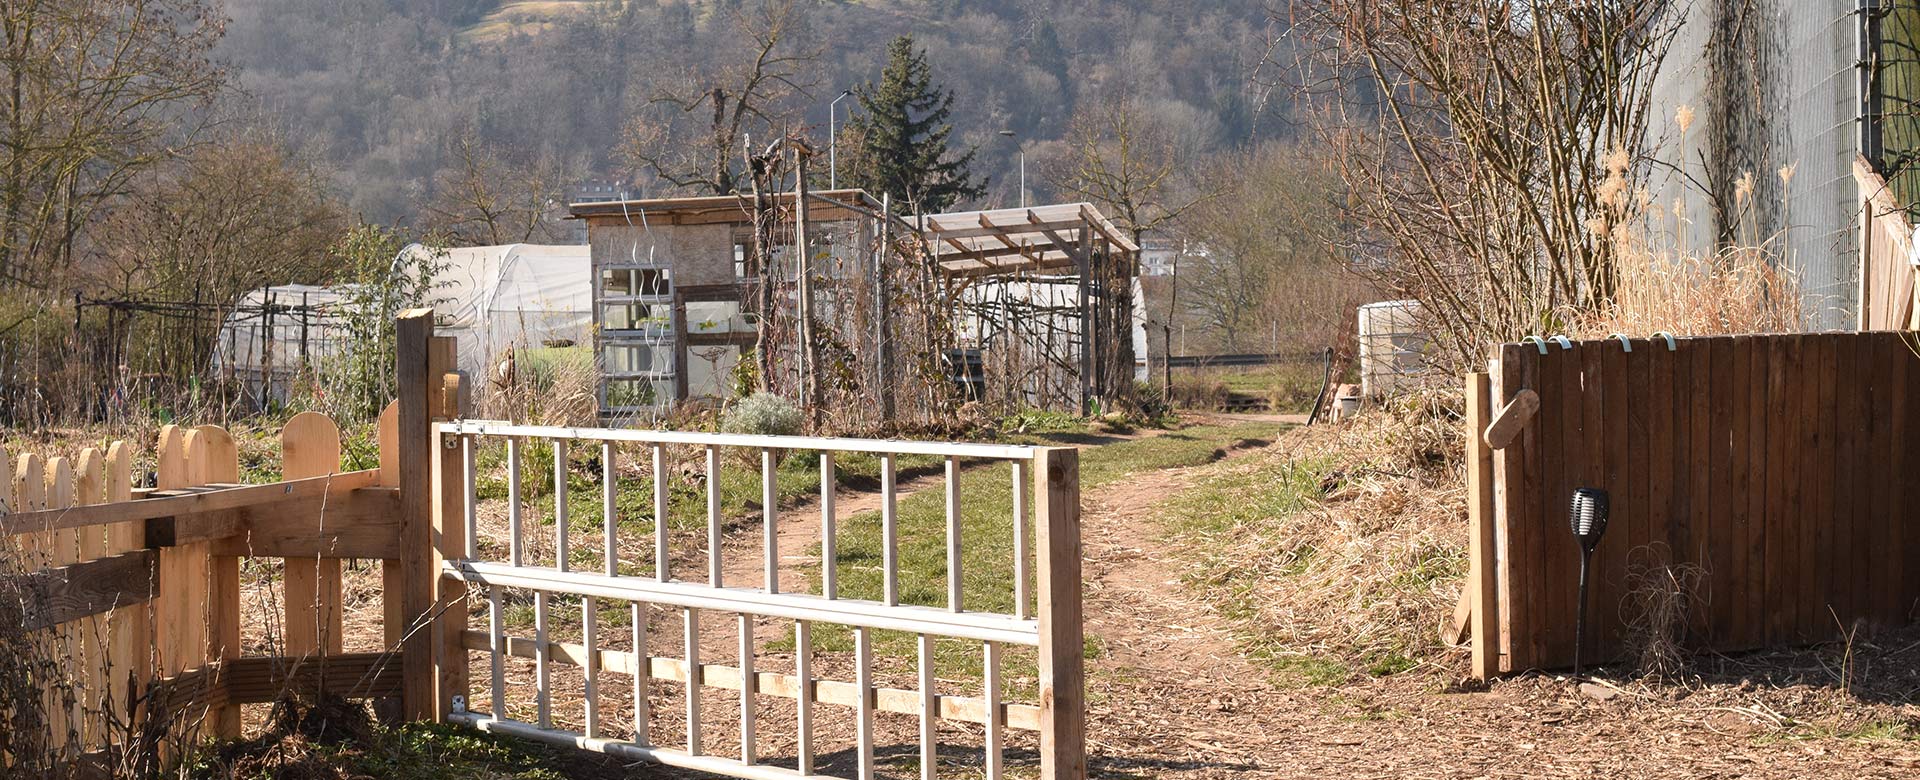 Solawi Gemeinschaftsgarten Trier, Frühjahr 2022